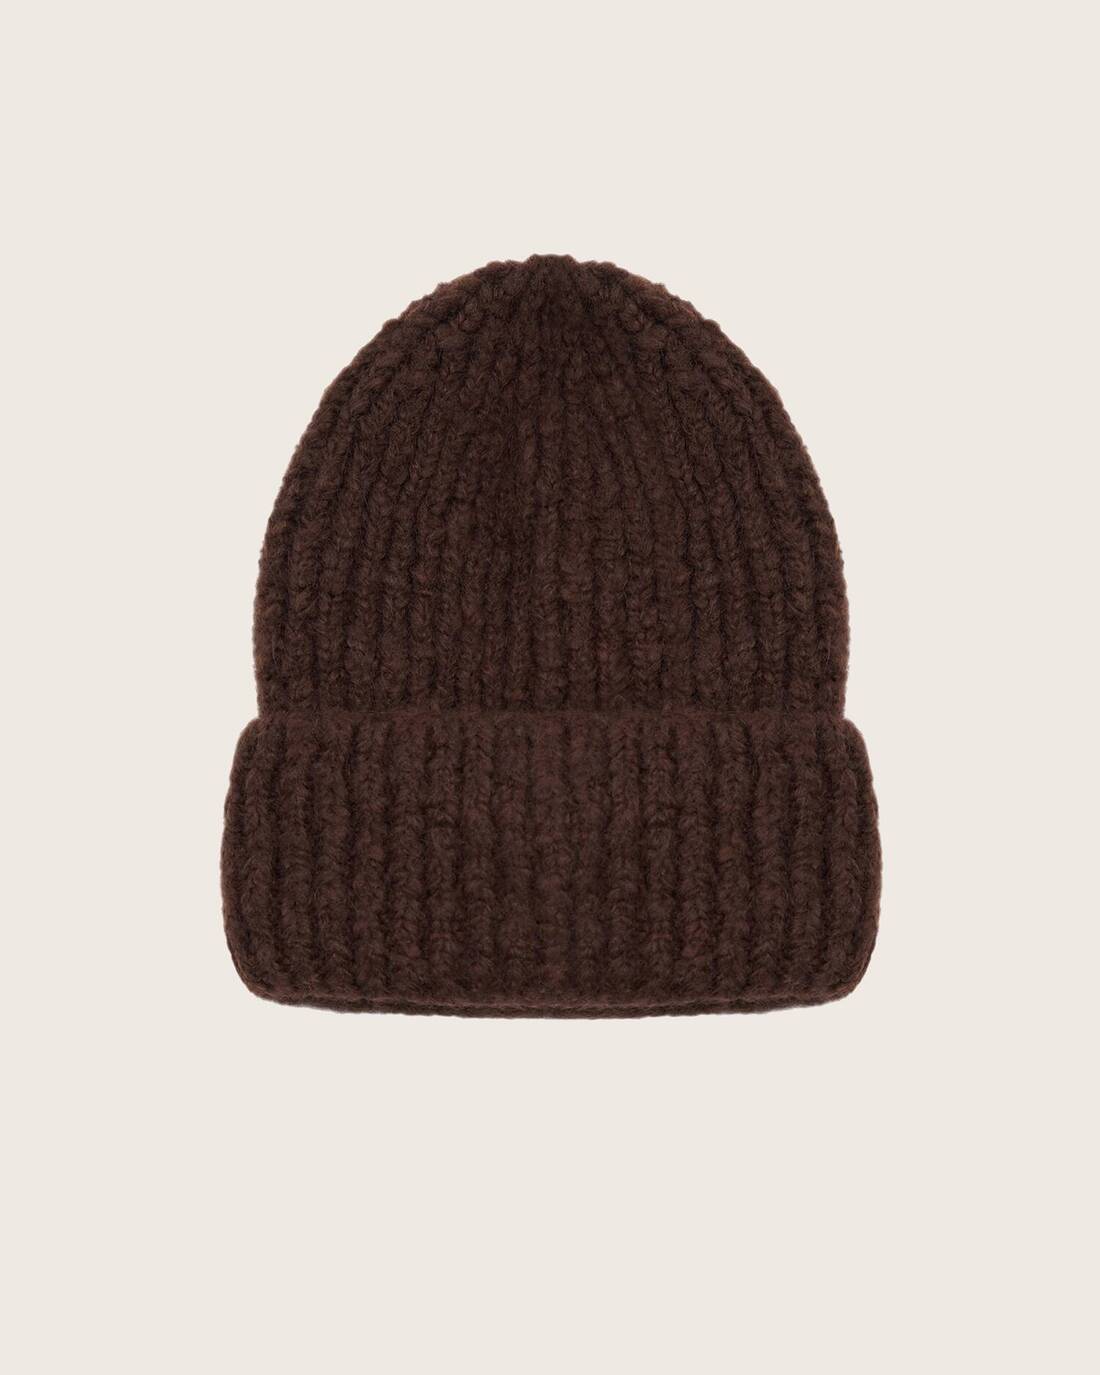 Mohair wool beanie hat